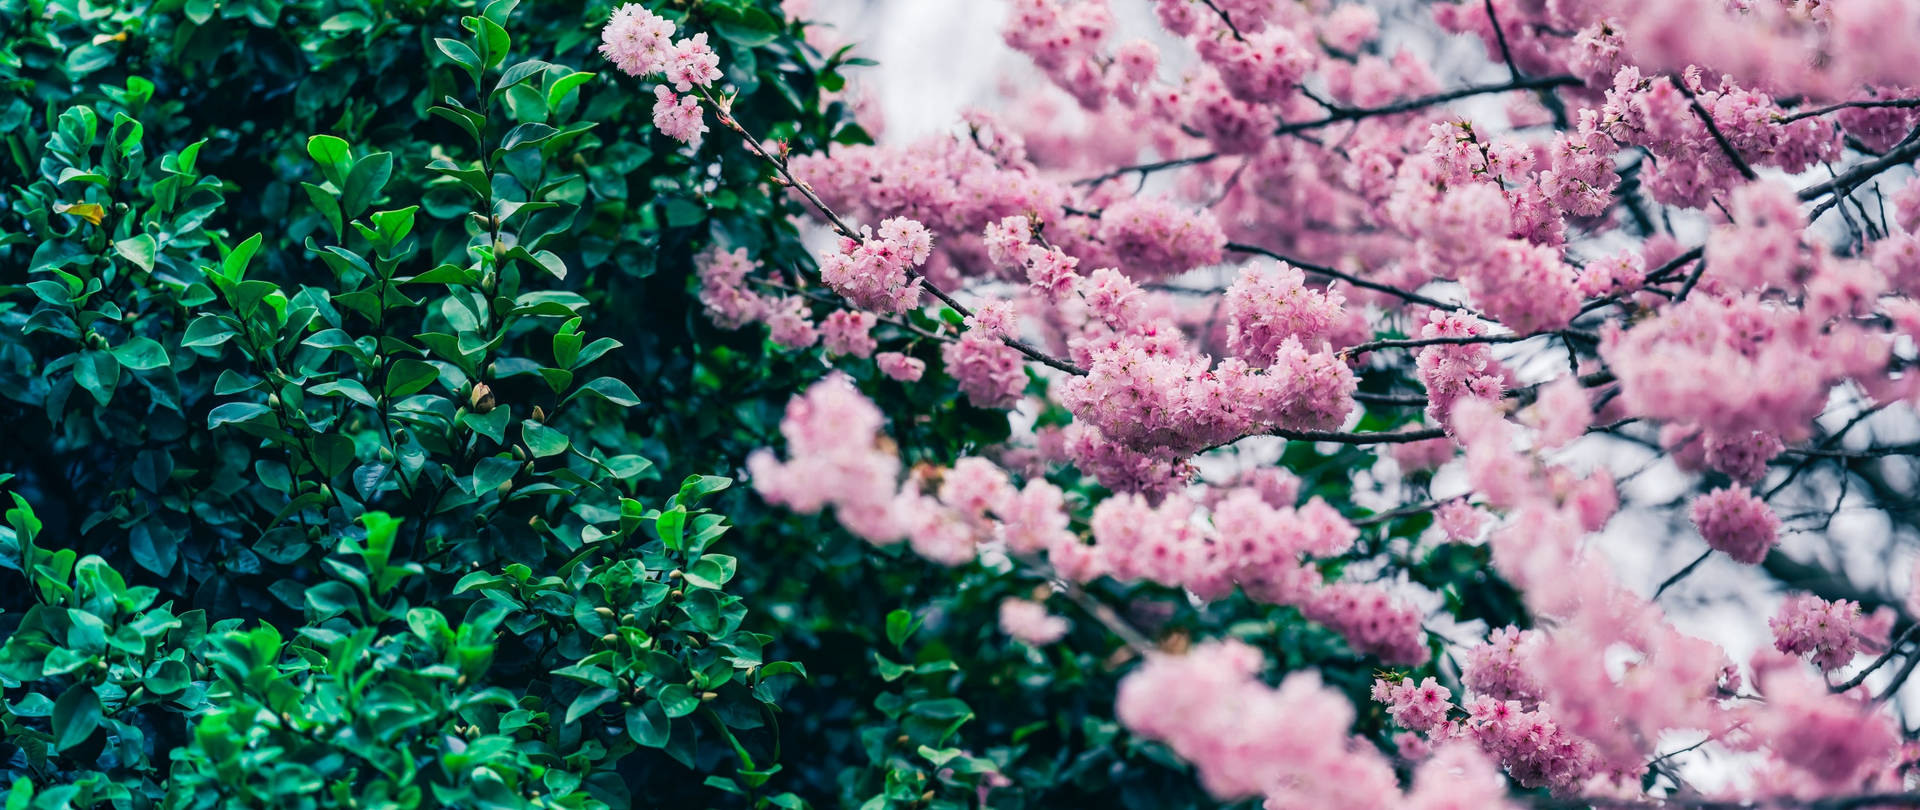 Elfondo De Pantalla Japonés Con Flores De Cerezo Y Arbusto Verde. Fondo de pantalla